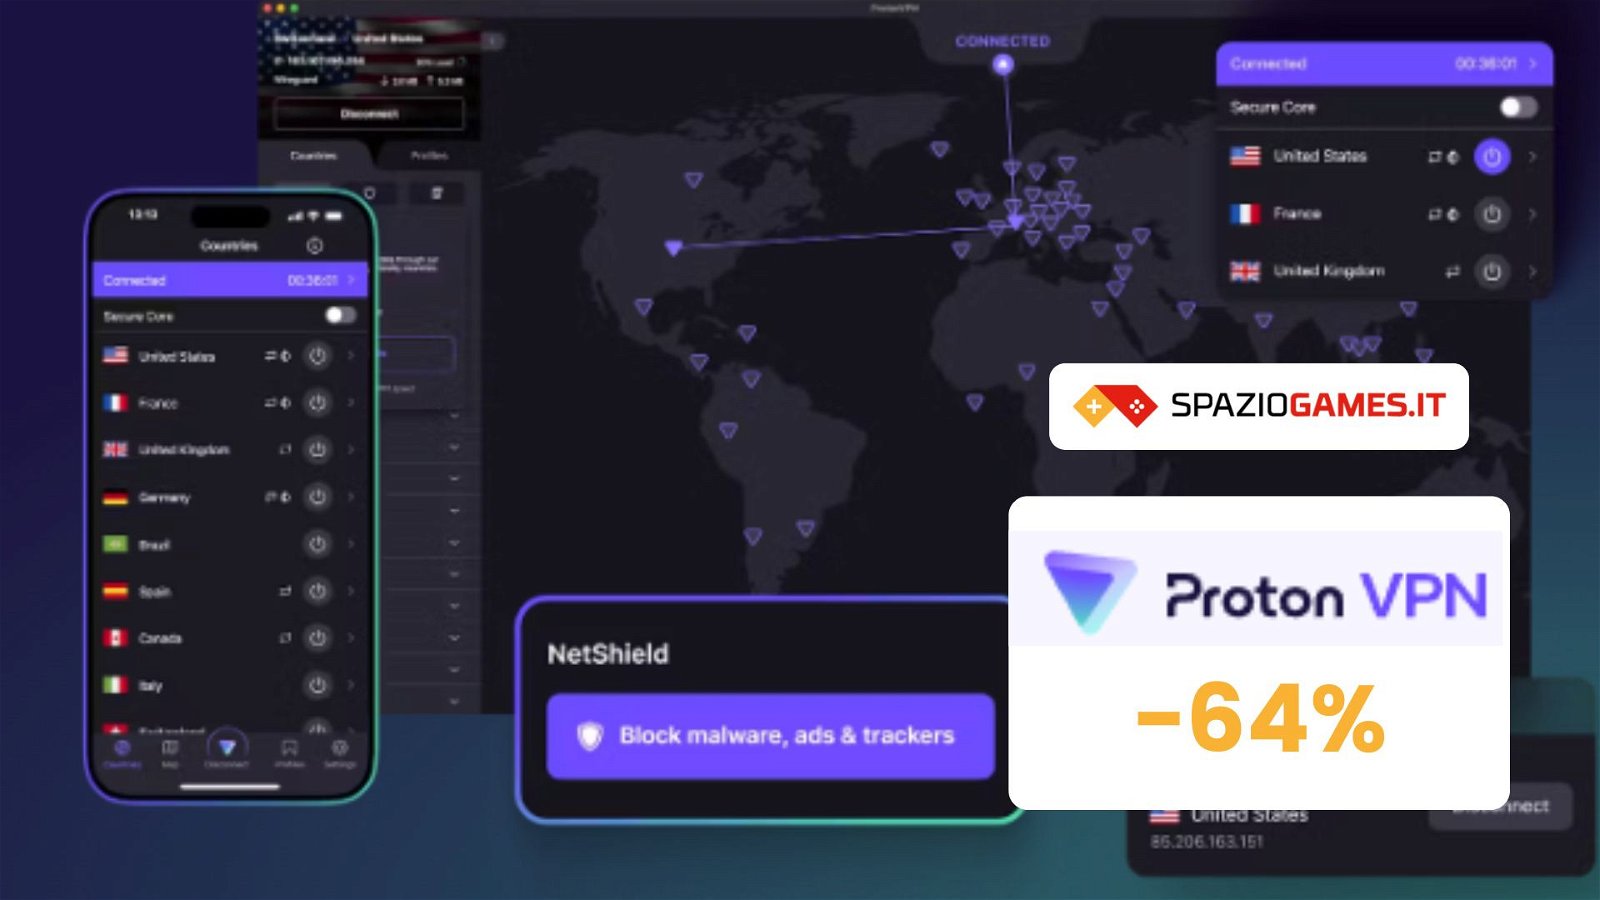 Proton VPN sorprende con sconti fino al 64%: ecco come approfittarne